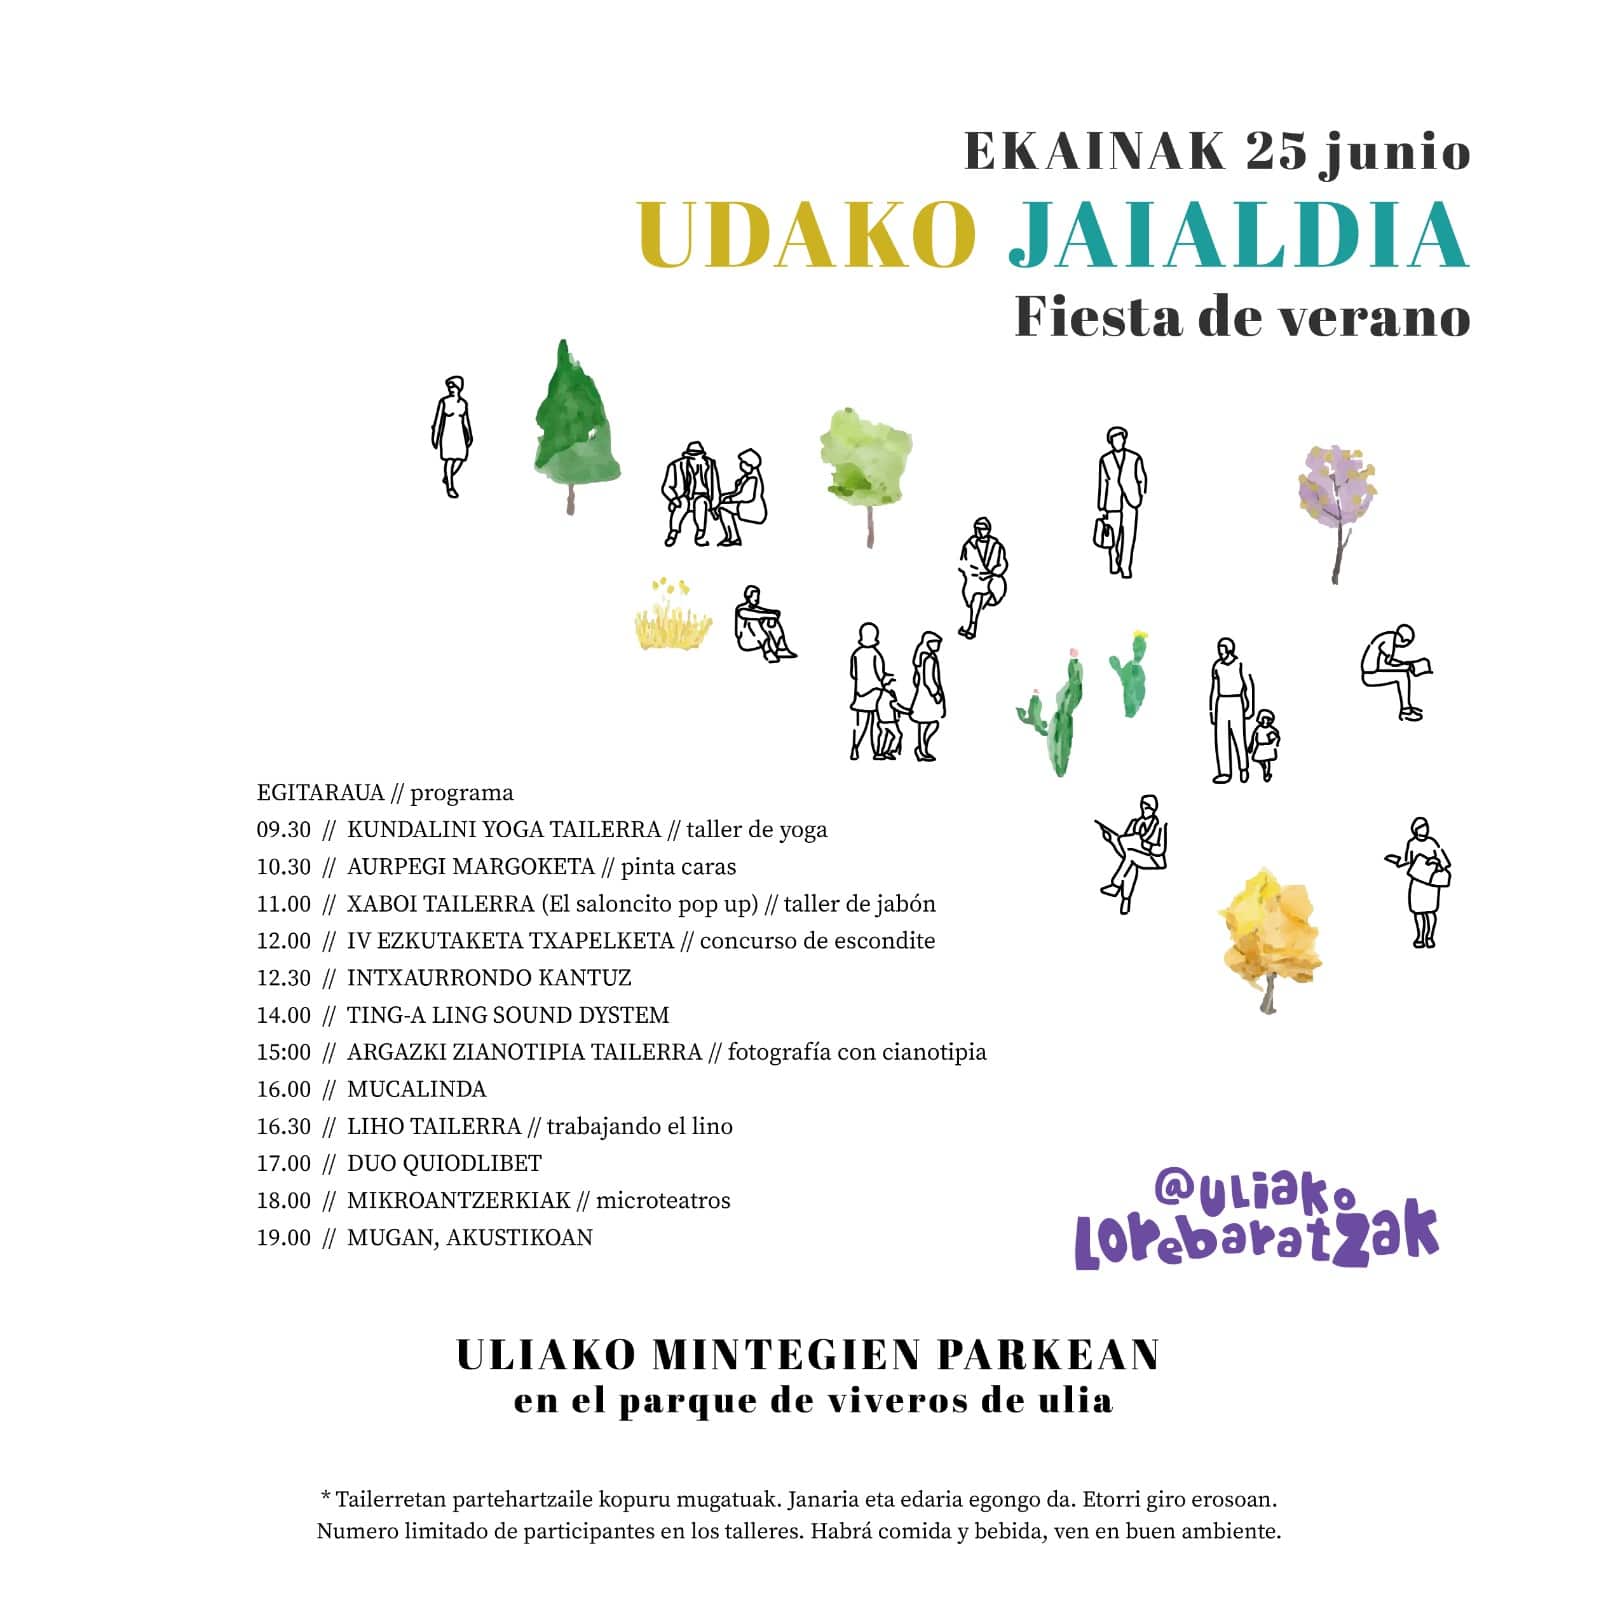 PROGRAMA E25 - Fiesta del verano este sábado en los viveros de Ulia